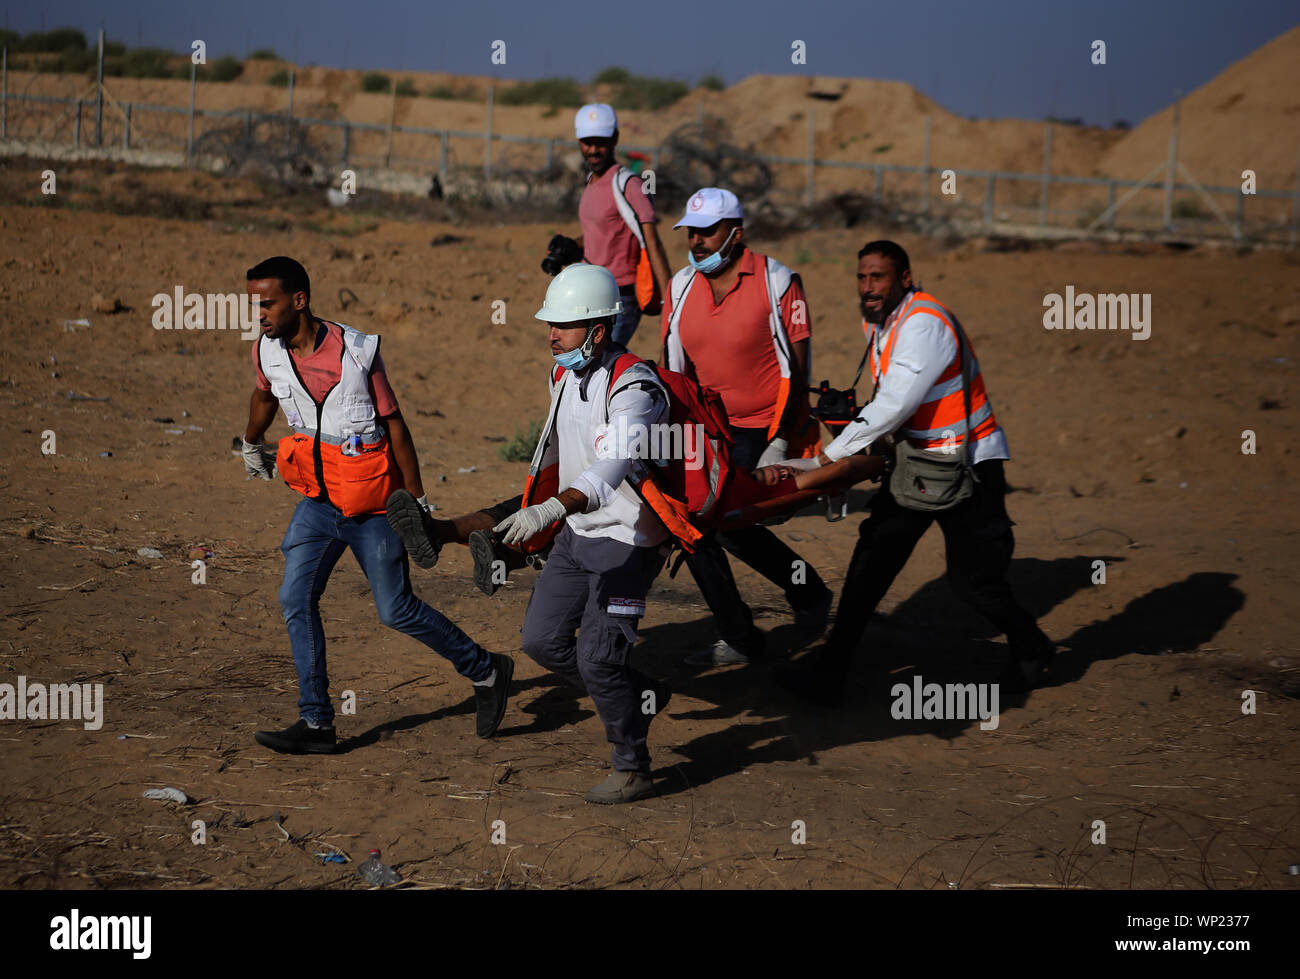 La striscia di Gaza, la Palestina. 06 Sep, 2019. I medici palestinesi portano una persona ferita durante un anti-Israele dimostrazione presso il Israel-Gaza recinzione di confine nel sud della striscia di Gaza. Credito: SOPA Immagini limitata/Alamy Live News Foto Stock